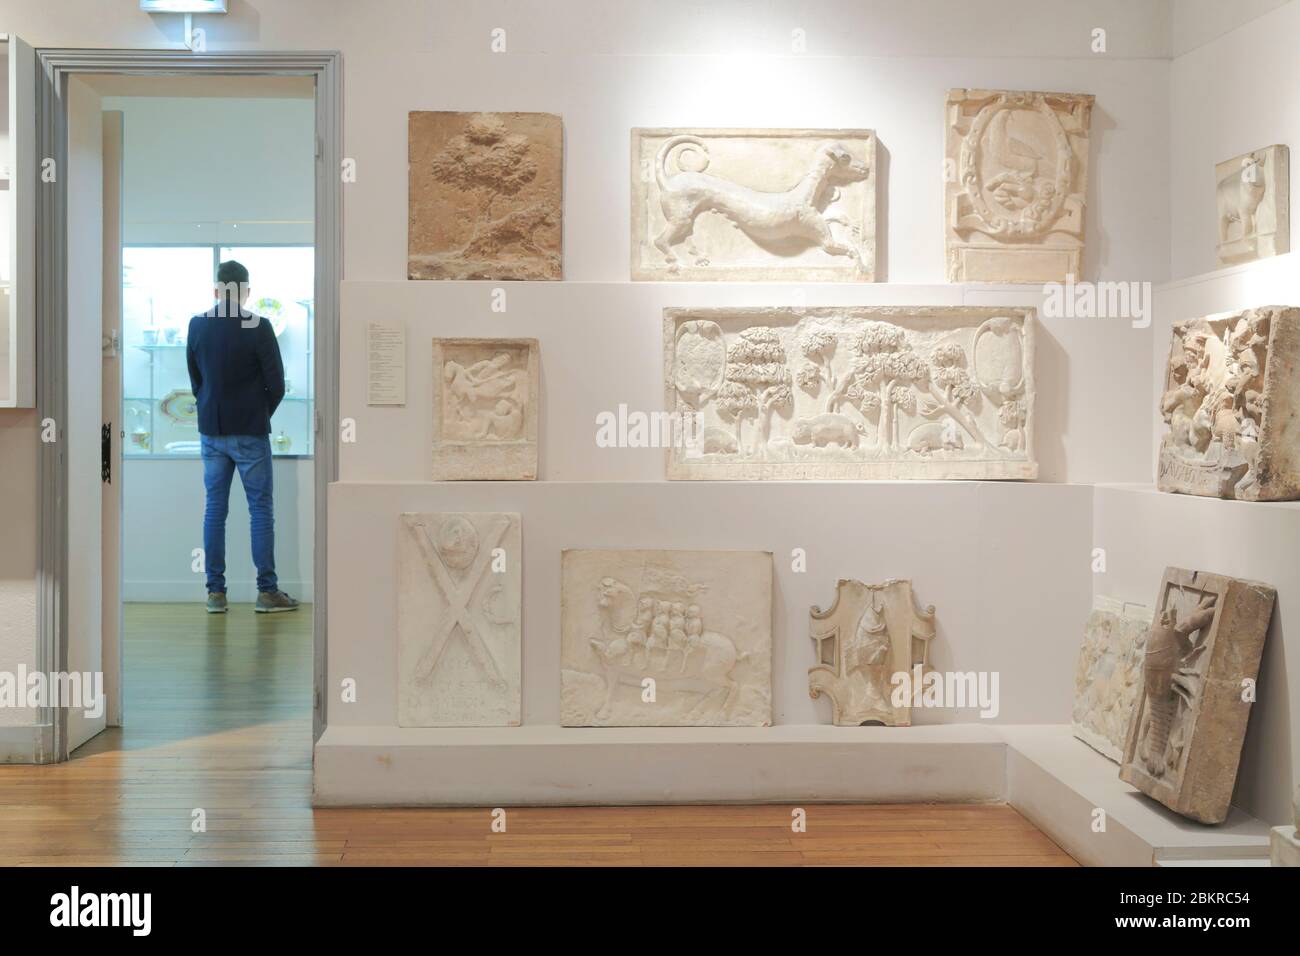 France, Loiret, Orléans, Musée d'histoire et d'archéologie, salle médiévale Banque D'Images